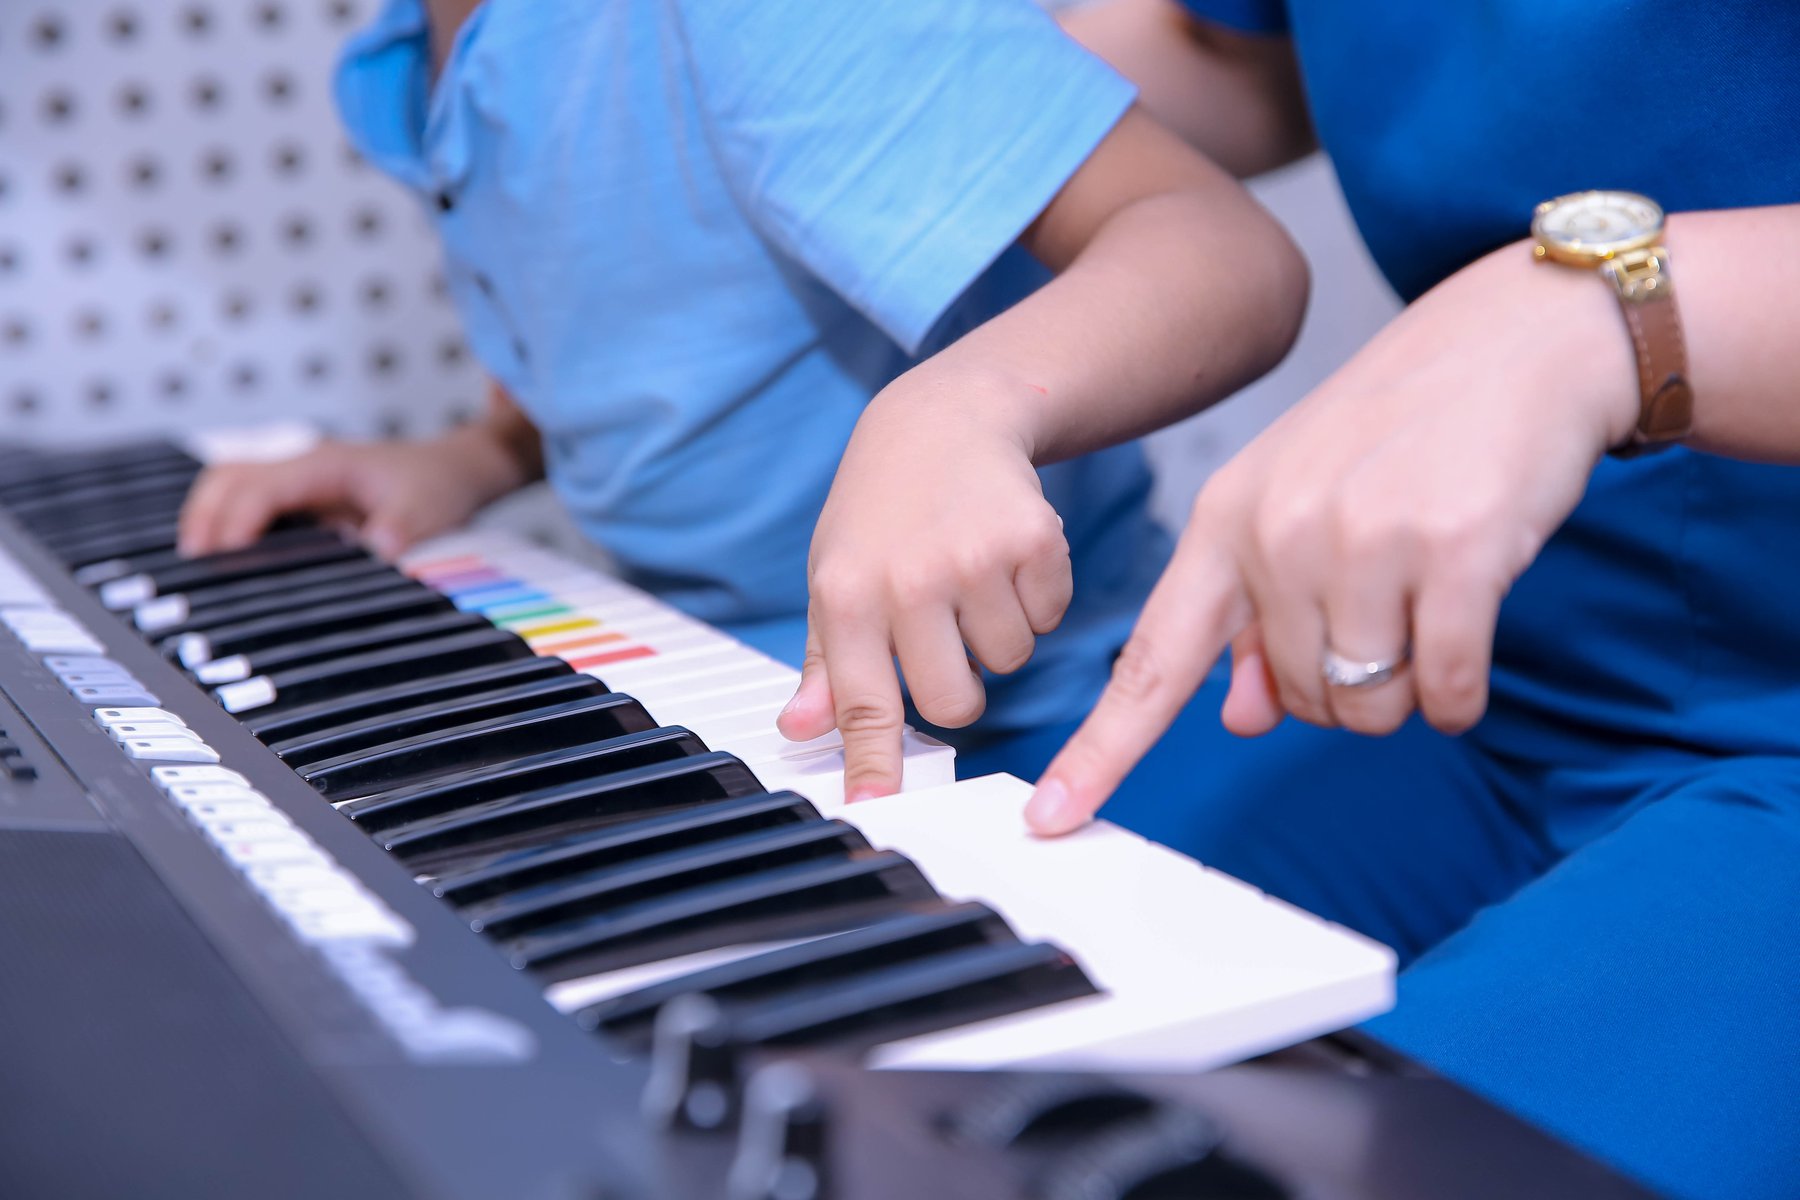 Bí quyết nuôi dạy trẻ thông minh: Chơi nhạc